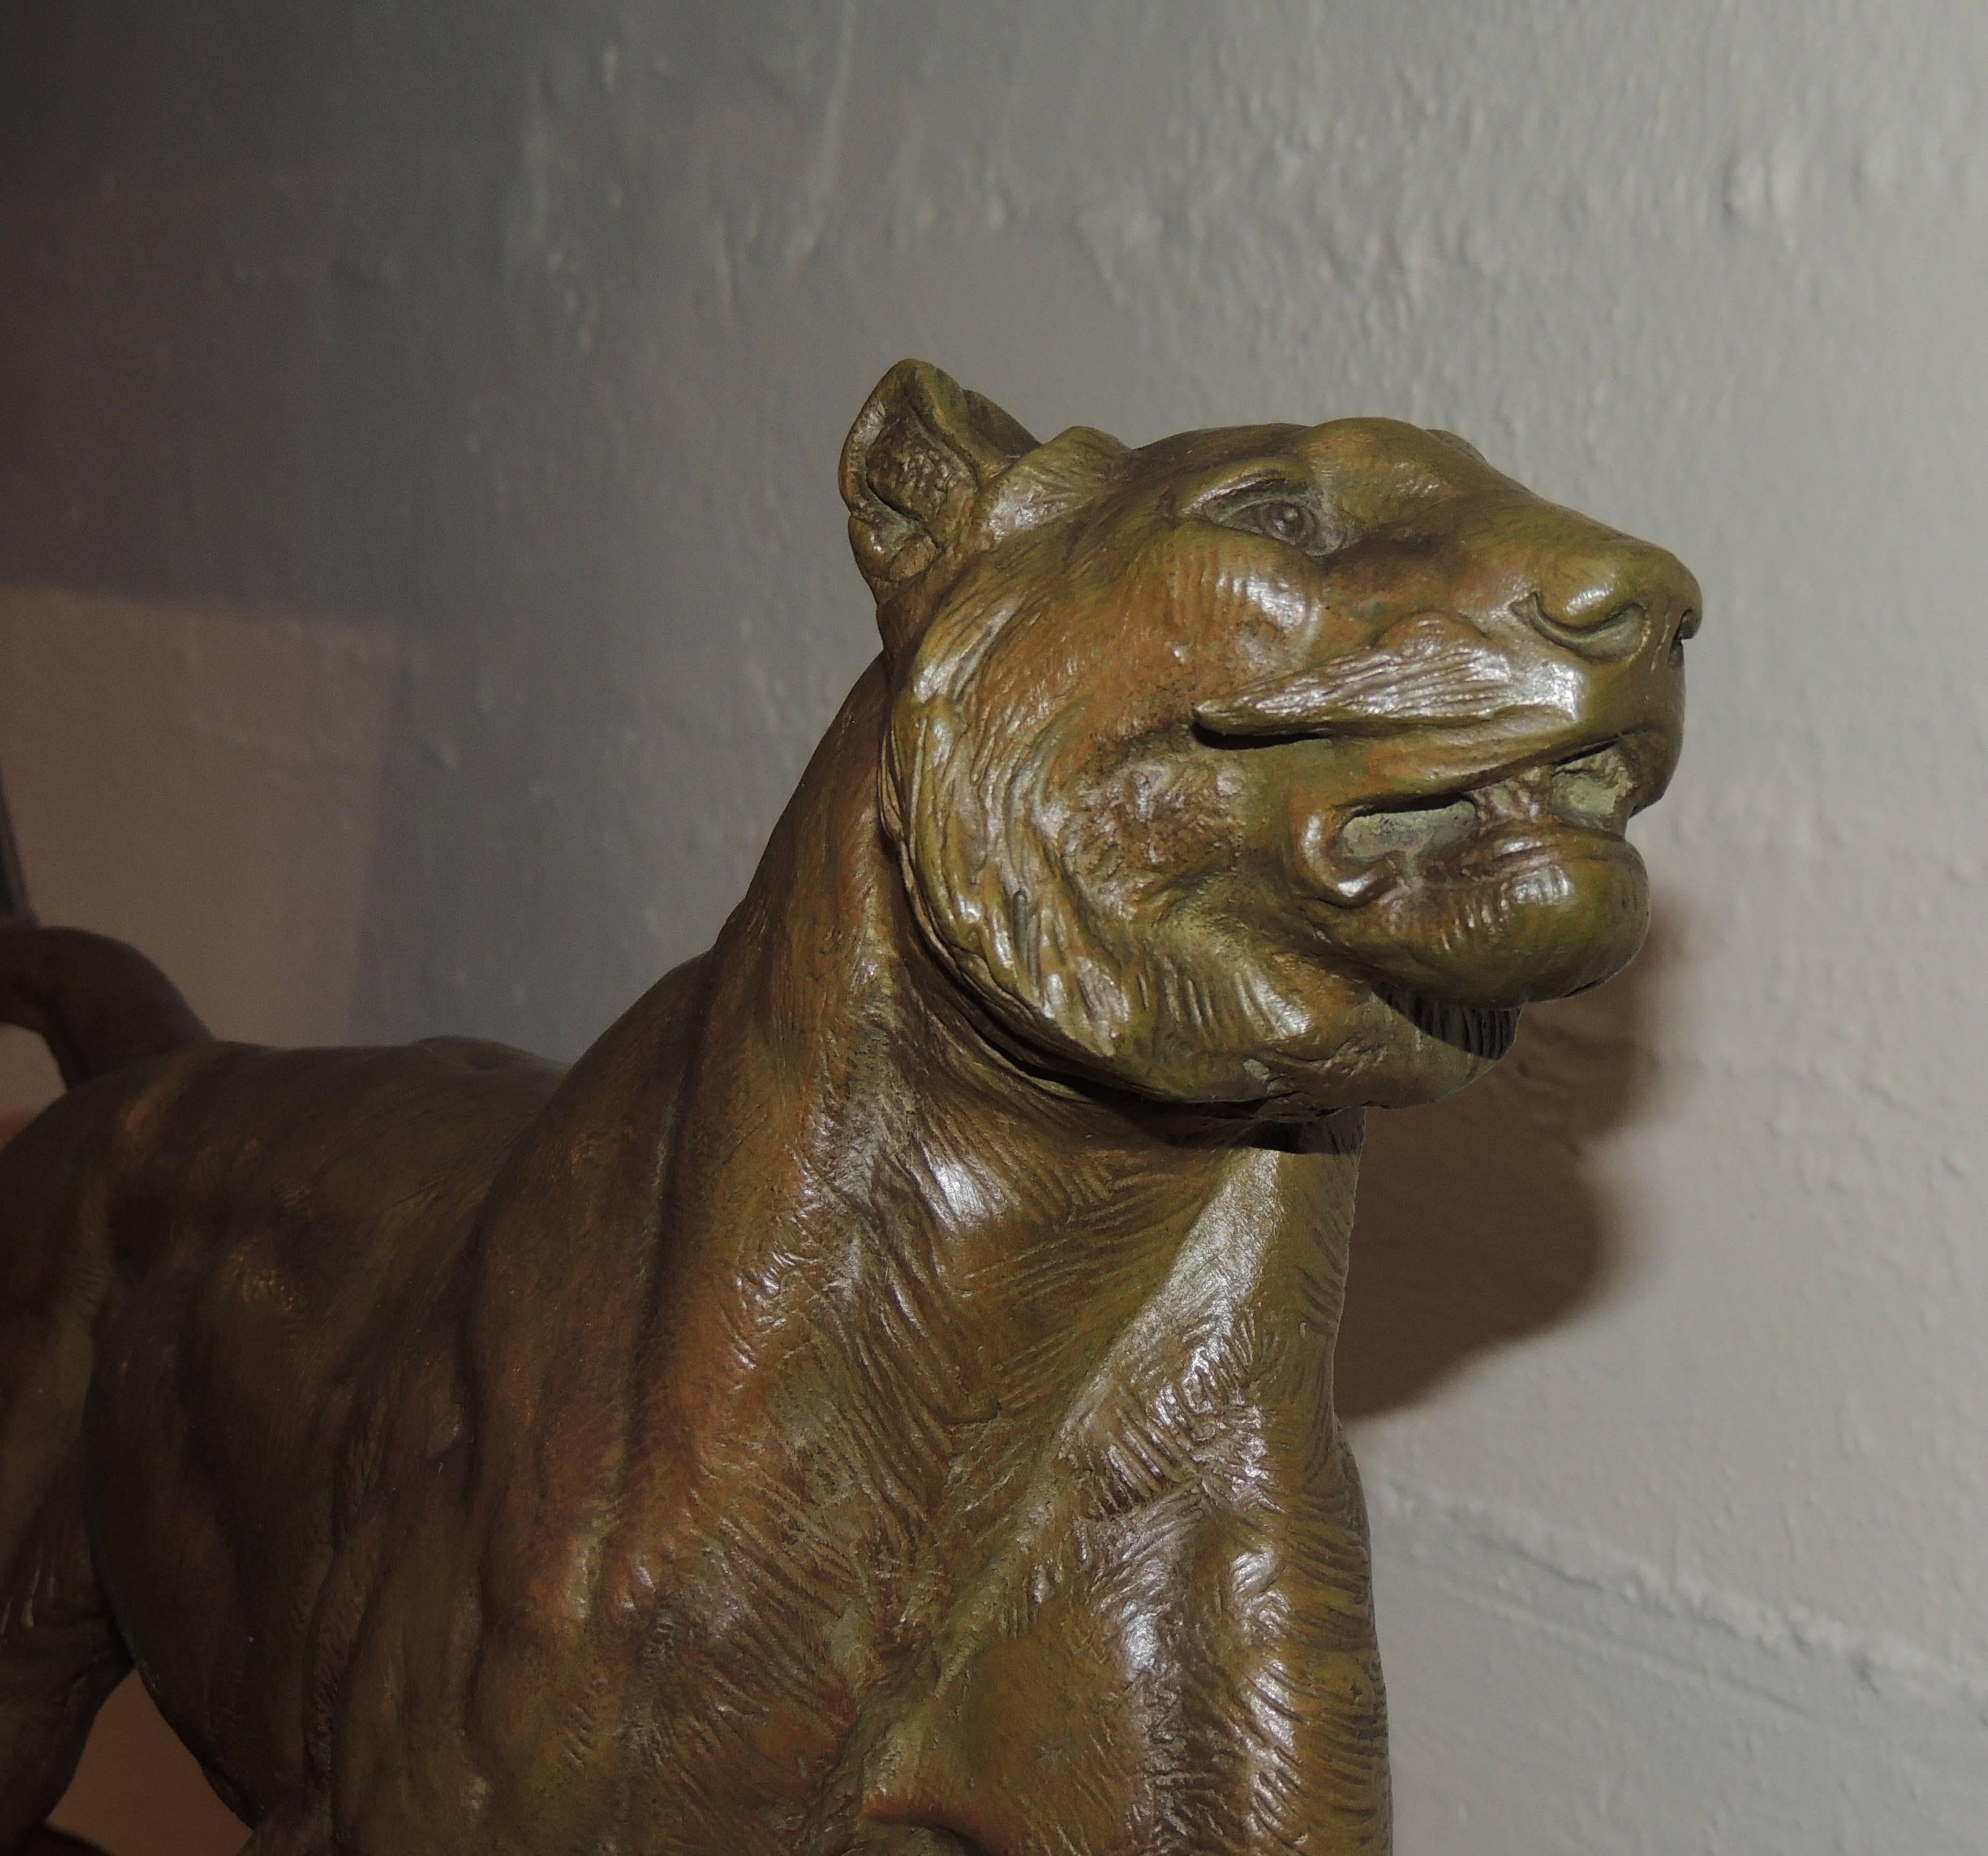 Es handelt sich um eine Art-Deco-Bronzestatue eines Löwen mit einem großen, dreifarbigen Marmorsockel, in den geometrische Formen eingelegt sind. Der Löwe ist kraftvoll dargestellt, und sein Ausdruck und seine Muskulatur sind gut ausgeprägt.

Im